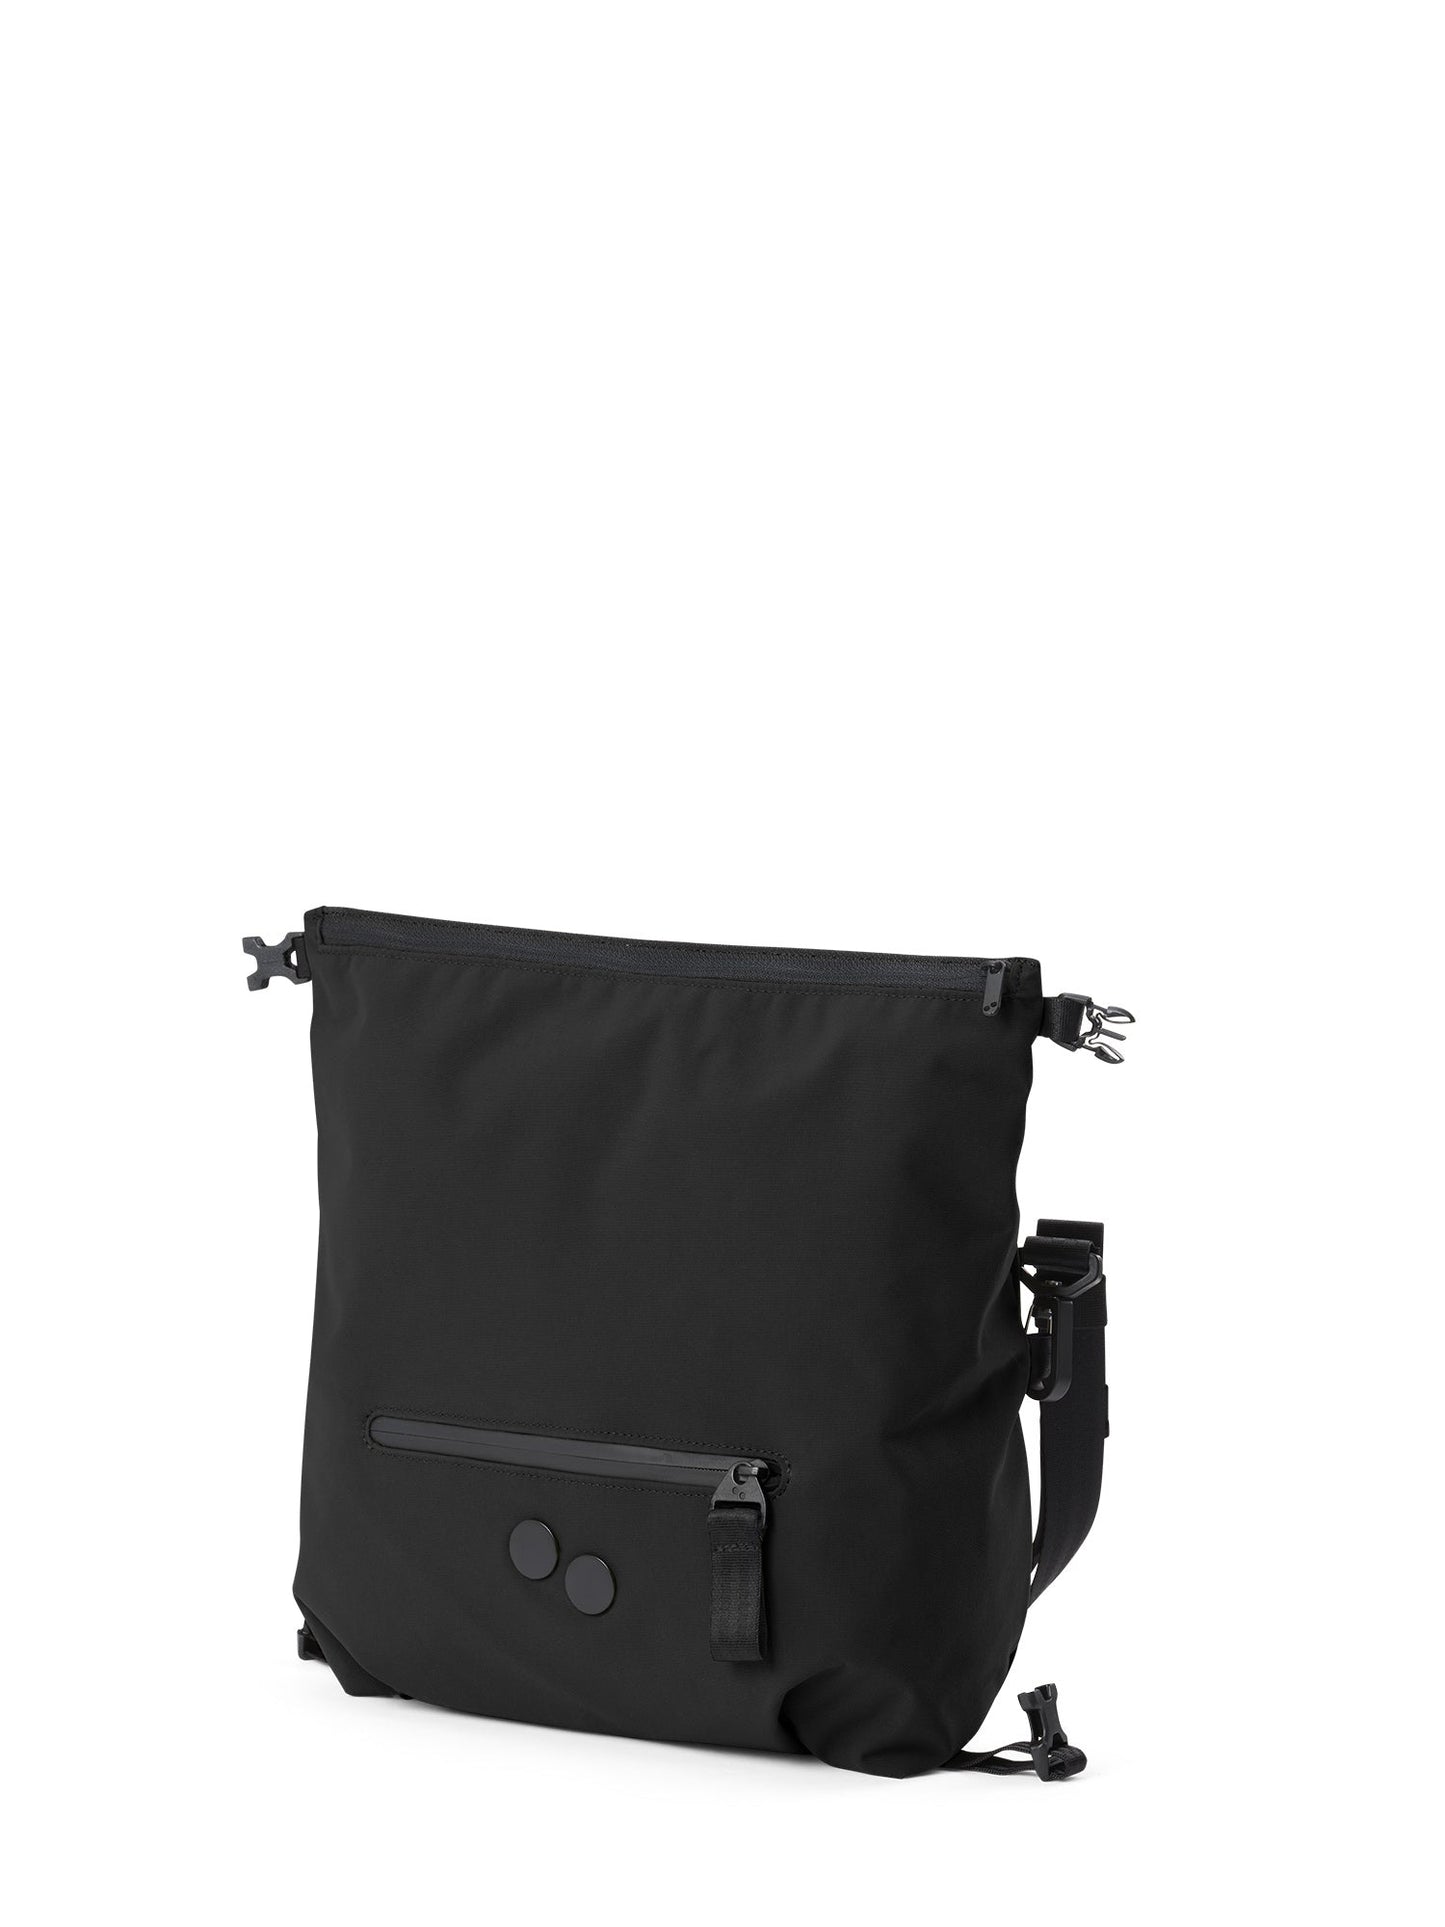 
                  
                    AKSEL Solid Black Bag
                  
                